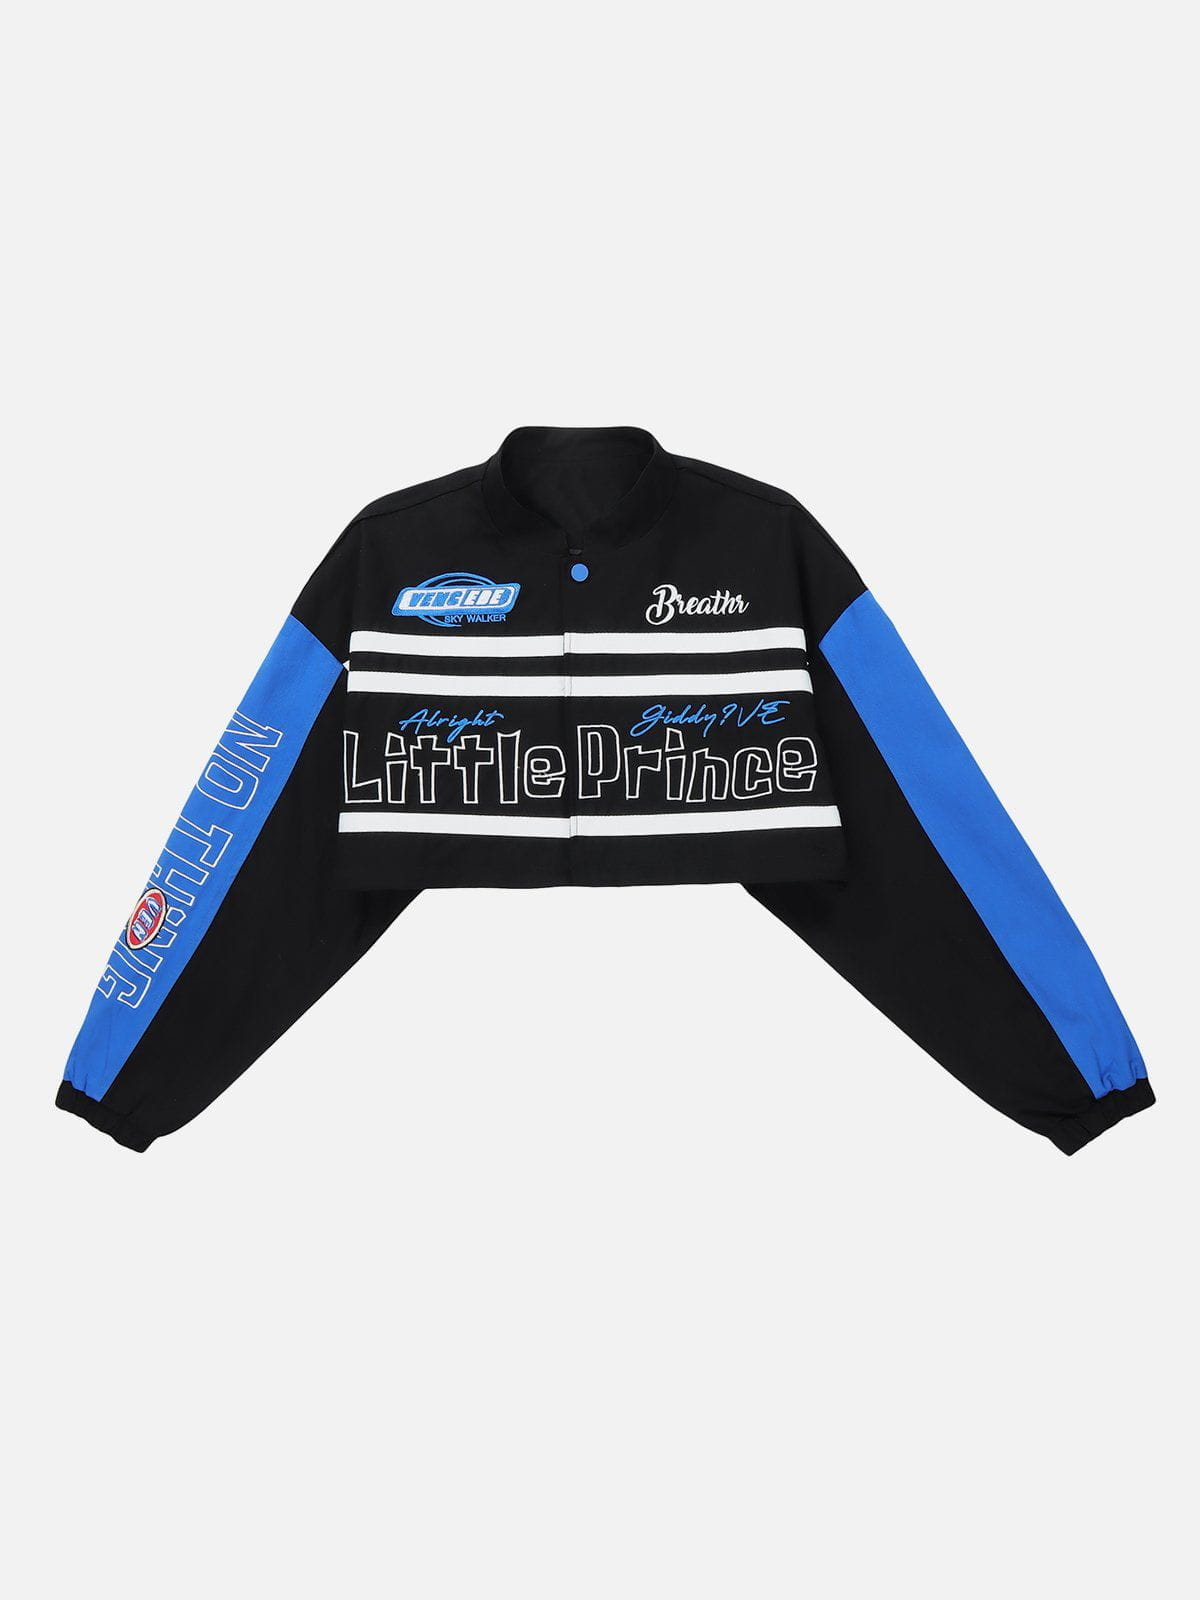 Majesda® - Little Prince Racing Detachable Jacket outfit ideas, streetwear fashion - majesda.com